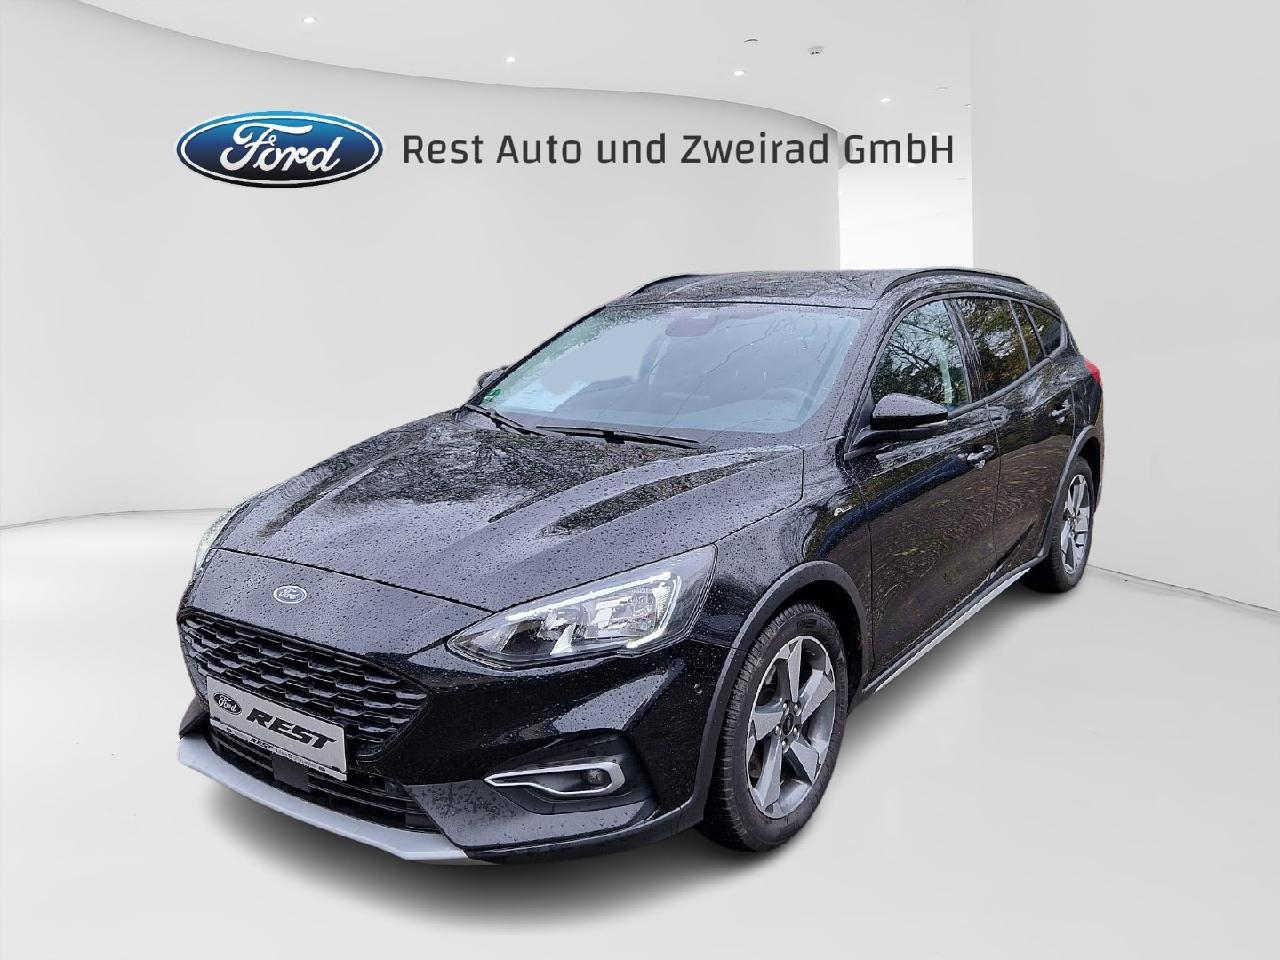 Ford Kfz- & Auto-Zubehör  Rest Auto und Zweirad GmbH Achern